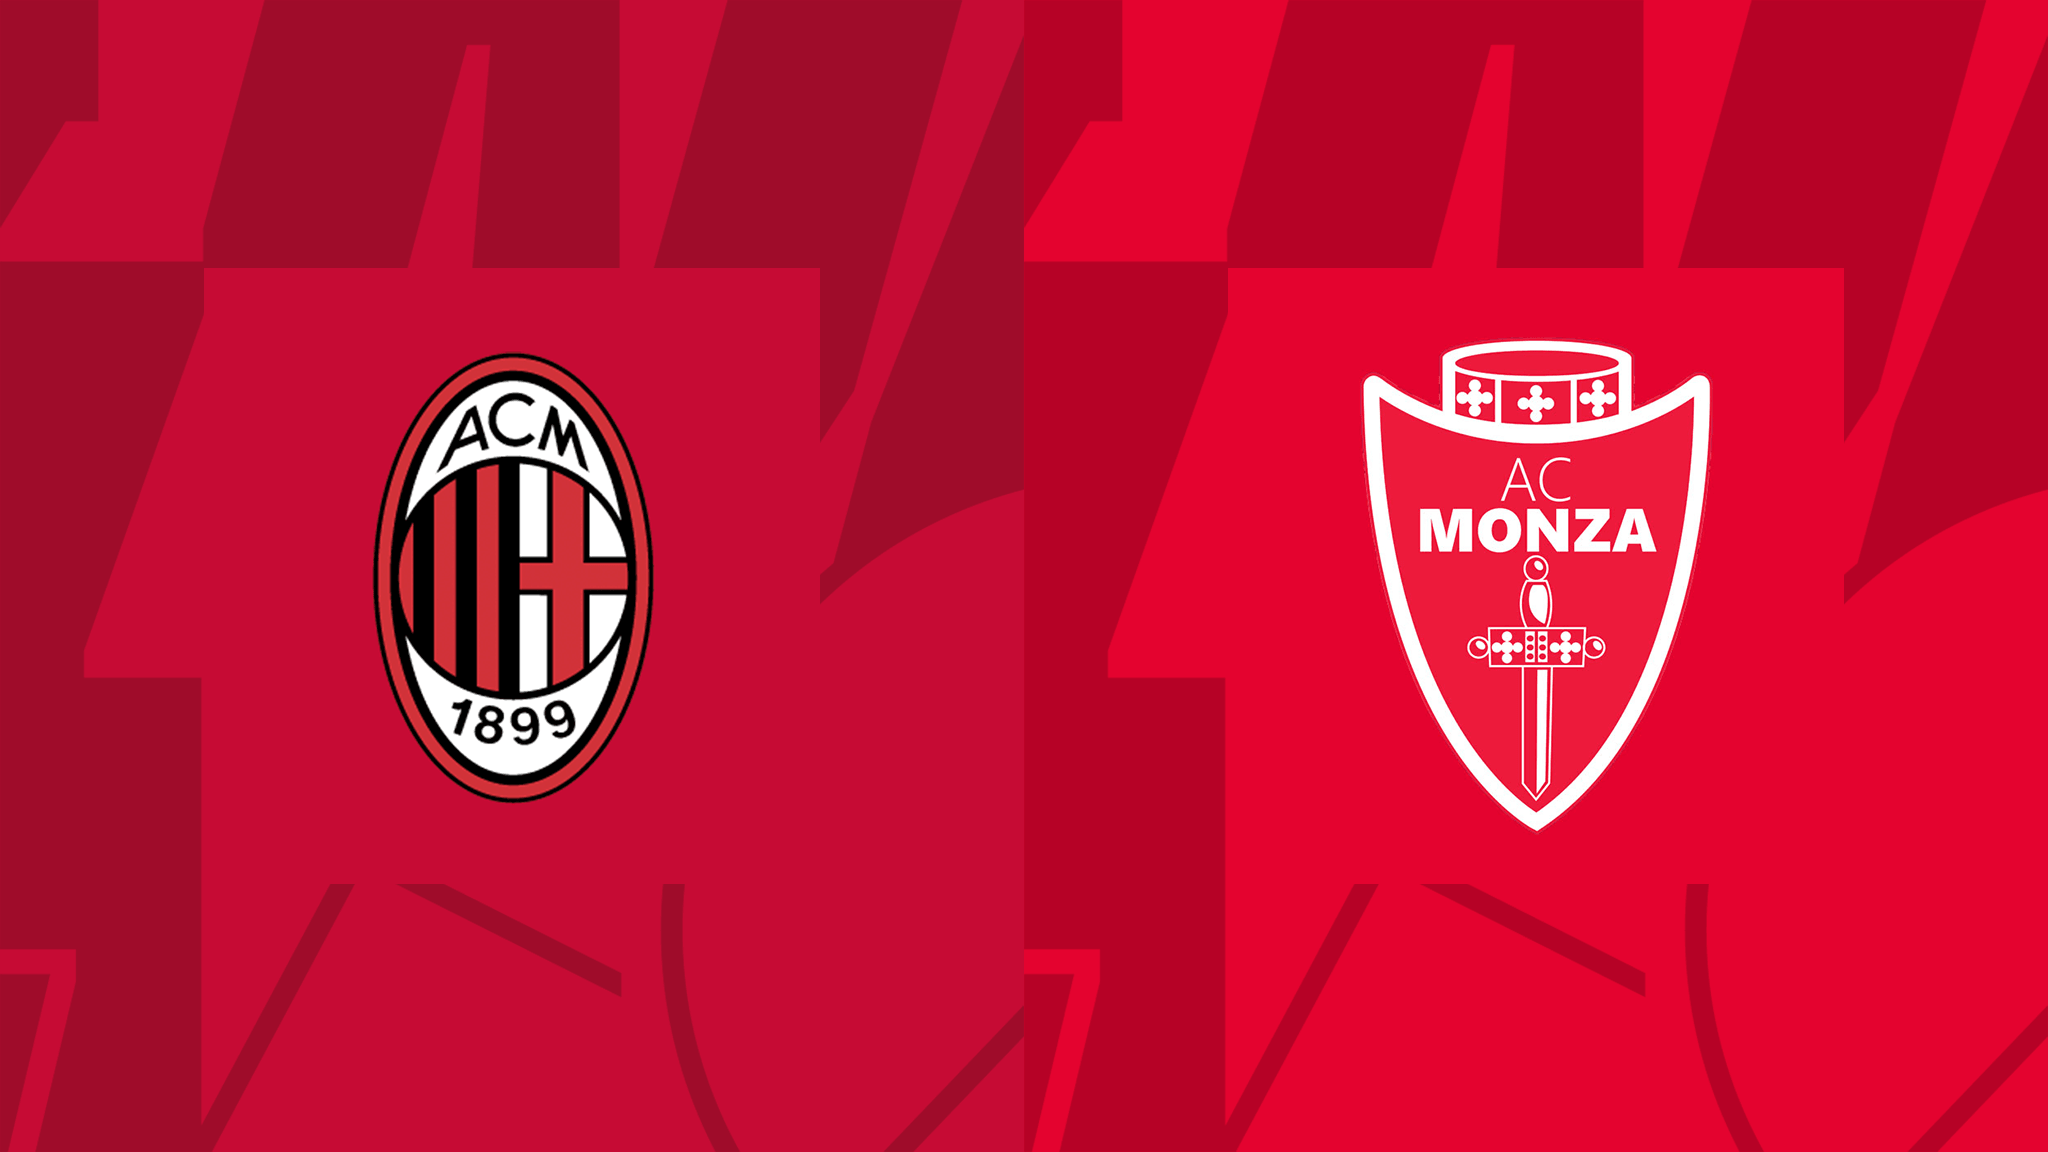  مشاهدة مباراة ميلان و مونزا بث مباشر 22/10/2022 Milan vs Monza